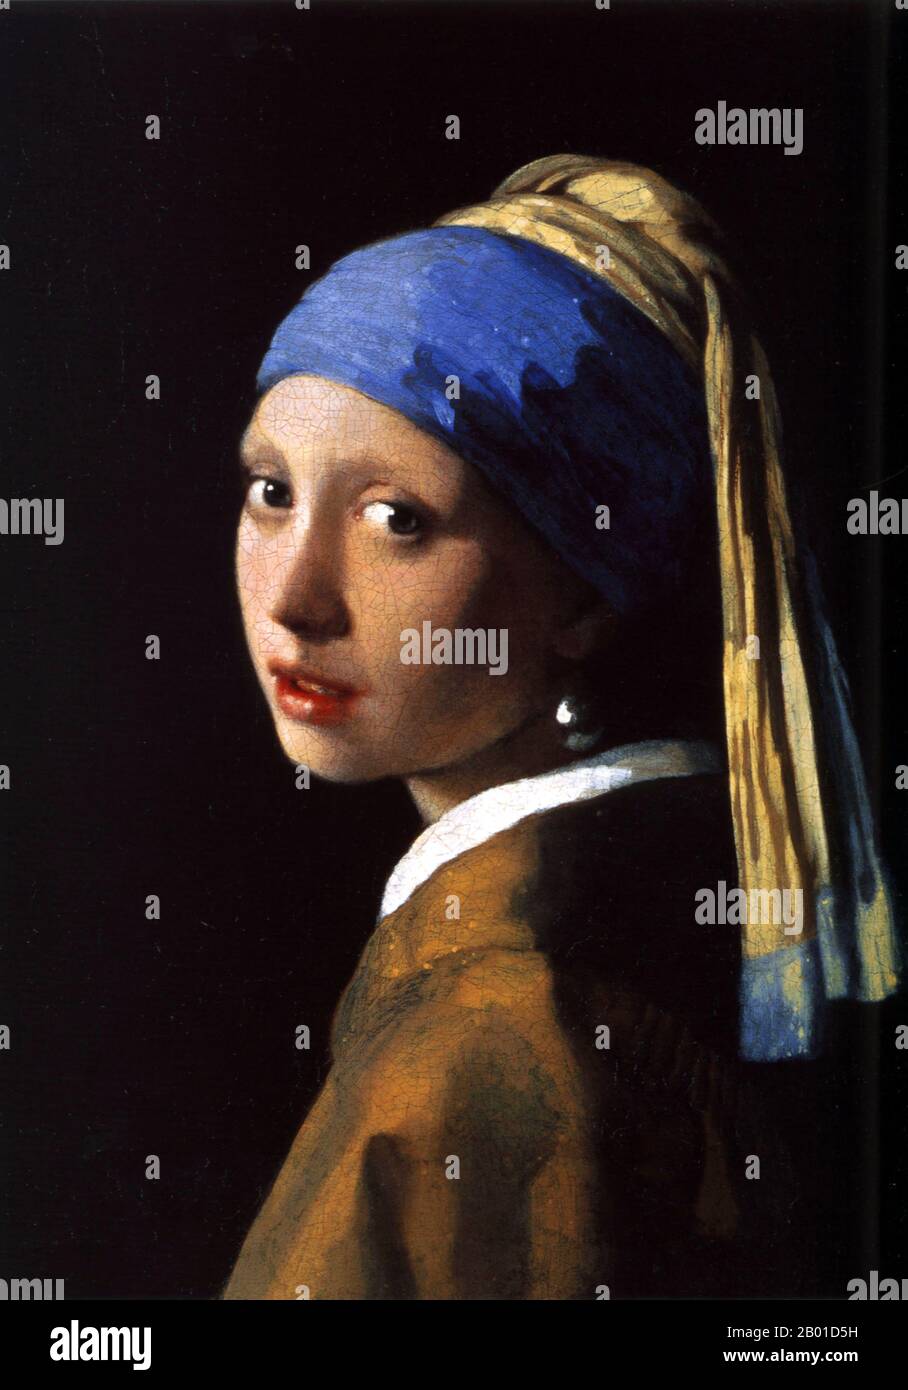 Niederlande: 'Mädchen mit einem Perlenohrring'. Öl auf Leinwand Gemälde von Johannes Vermeer (31. Oktober 1632 - 15. Dezember 1675), c. 1665. Das Gemälde 'Girl with a Pearl Earring' (Niederländisch: Het Meisje met de Parel) ist eines der Meisterwerke des niederländischen Malers Johannes Vermeer und verwendet, wie der Name schon sagt, einen Perlenohrring als Brennpunkt. Heute befindet sich das Gemälde in der Mauritshuis-Galerie in Den Haag. Es wird manchmal als "die Mona Lisa des Nordens" oder "die niederländische Mona Lisa" bezeichnet. Stockfoto